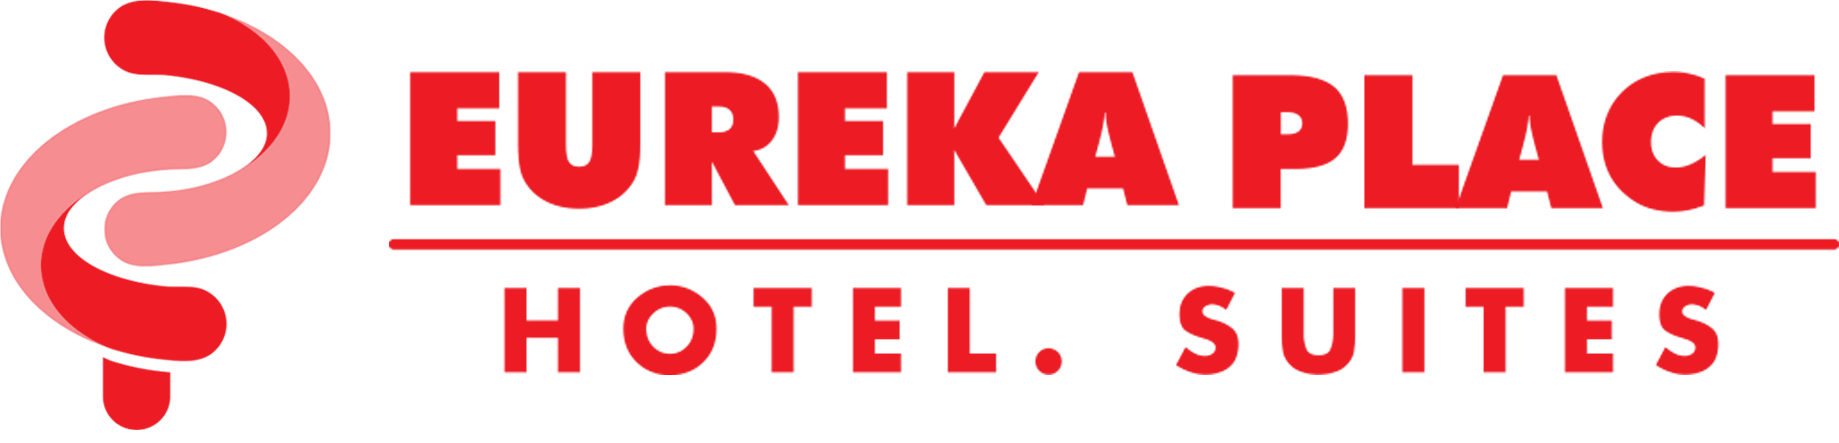 Eureka Place Hotel